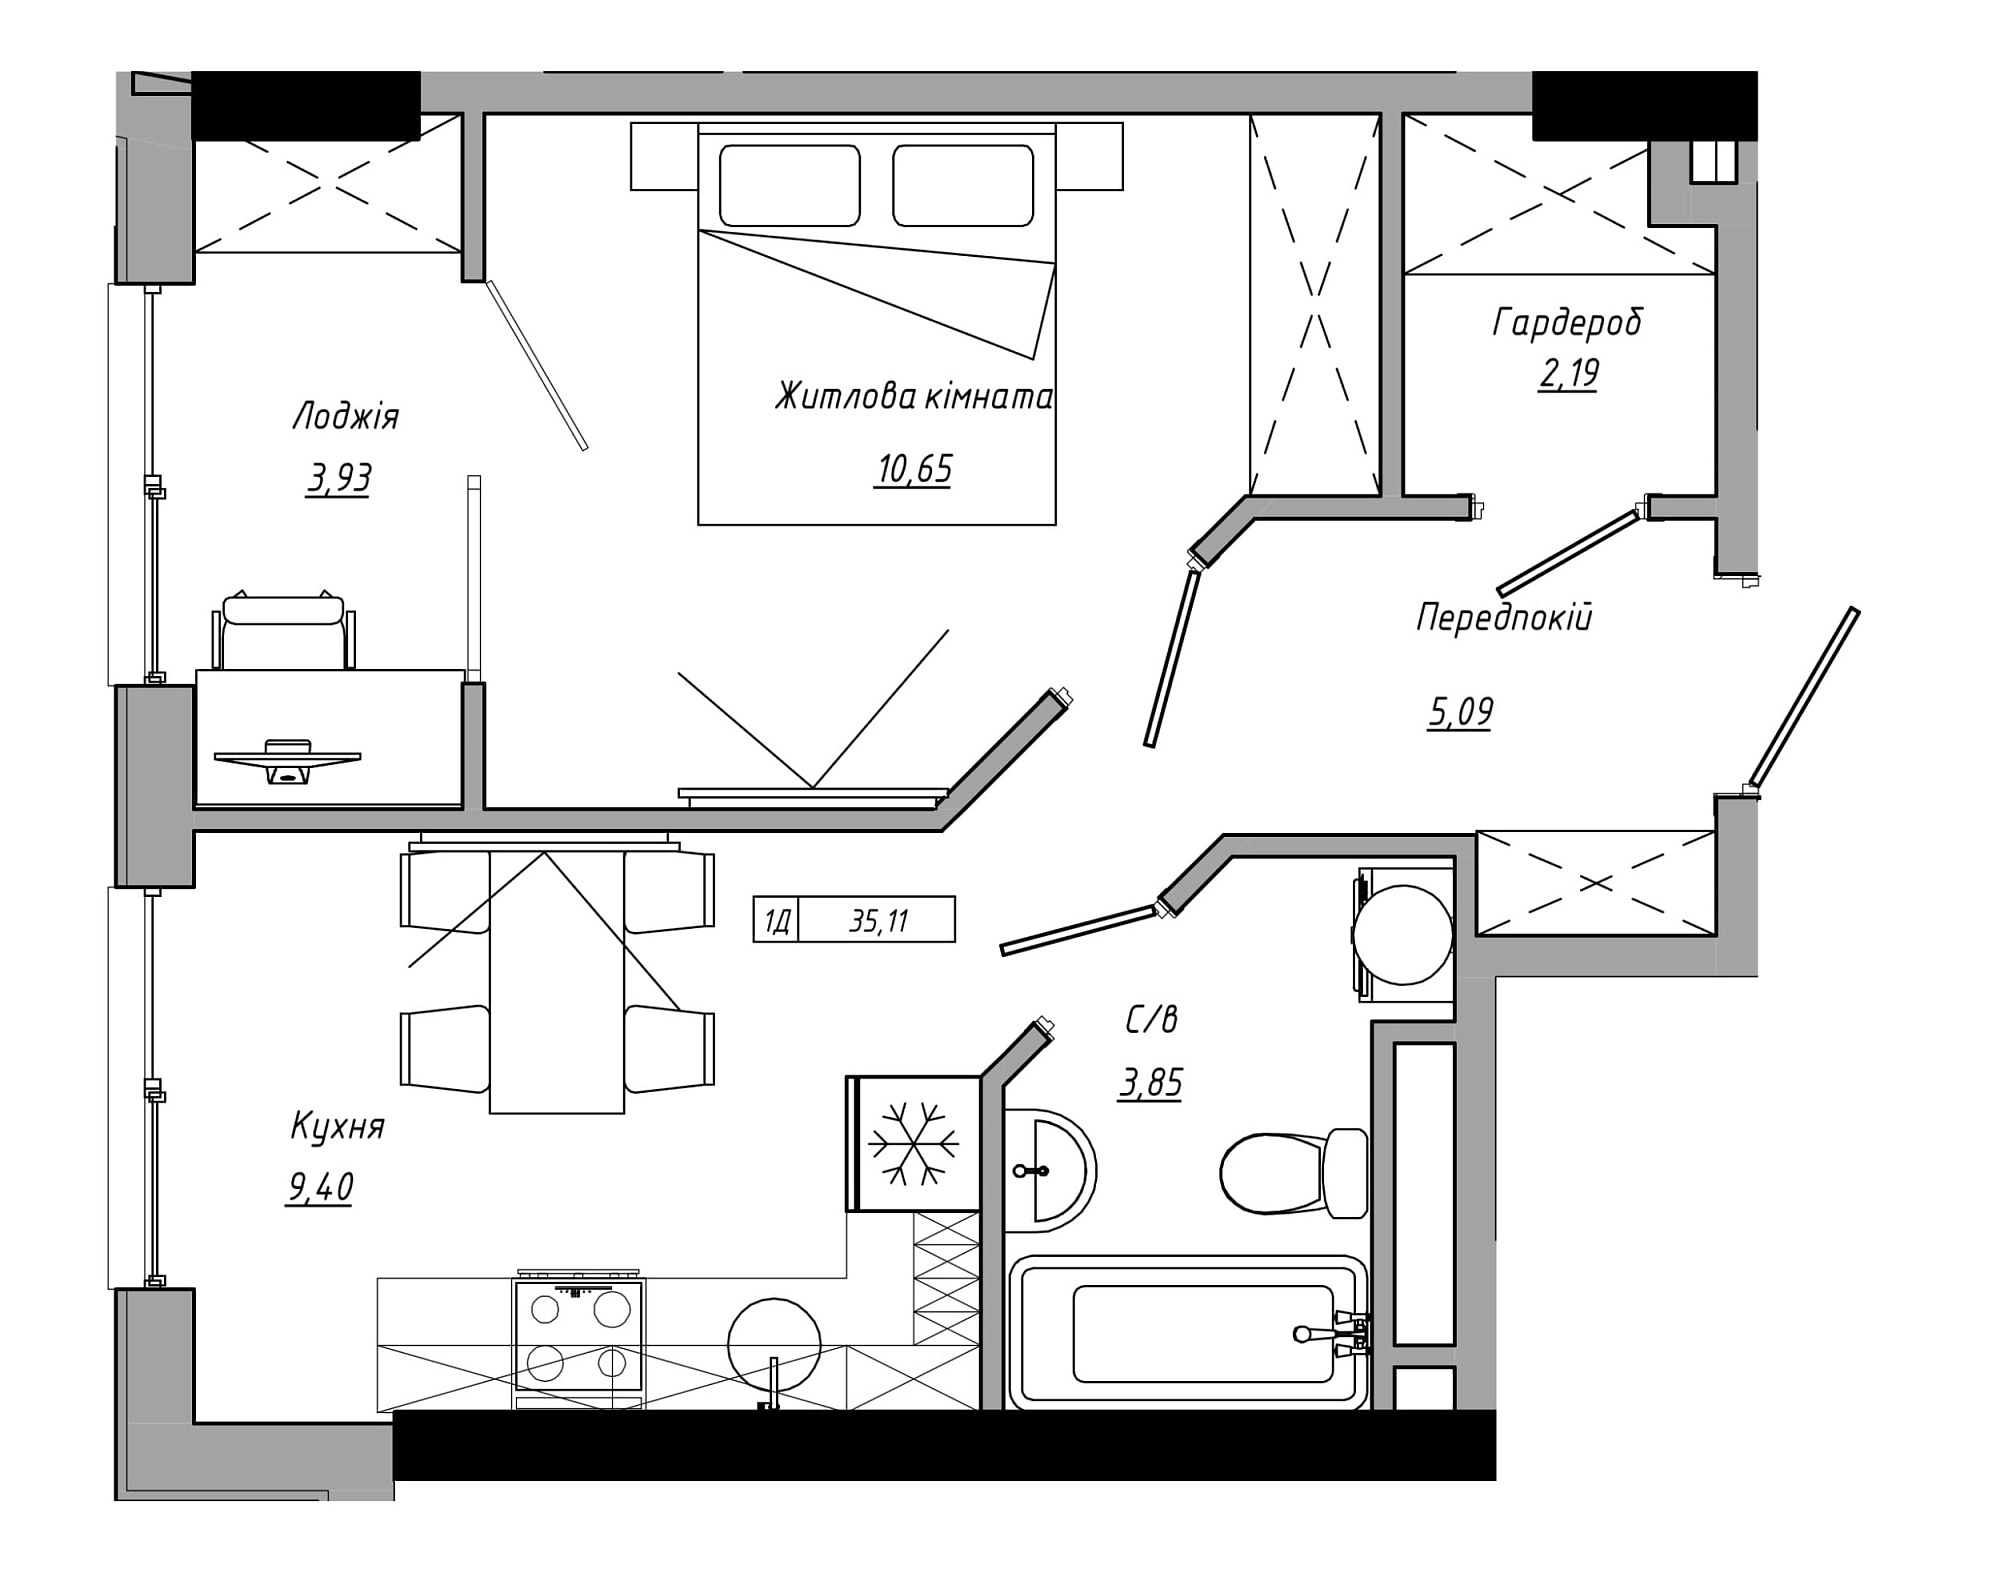 Планировка 1-к квартира площей 35.11м2, AB-21-14/00106.